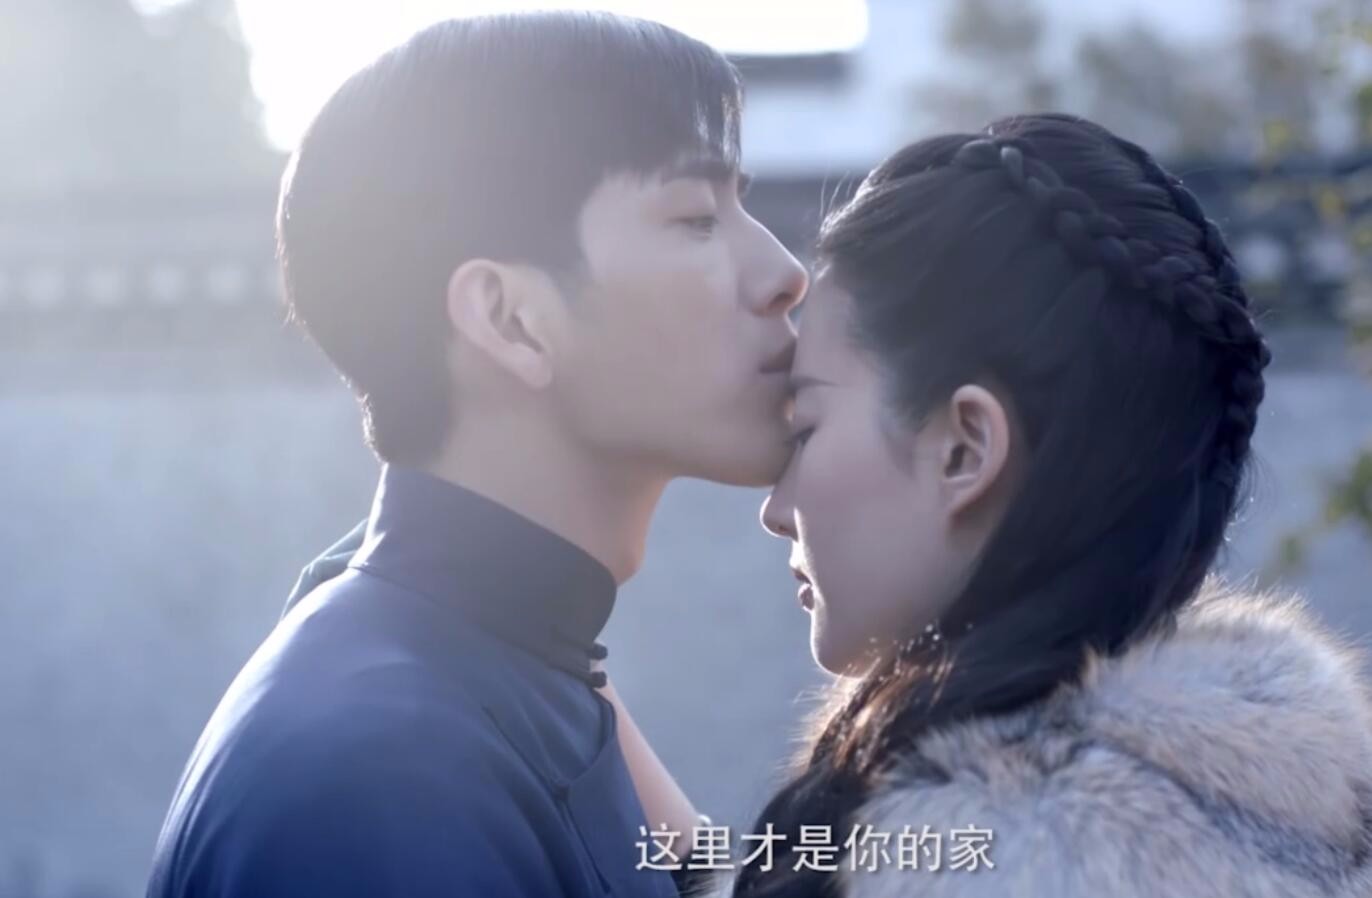 2019年讓人值得期待的電視劇《南煙齋筆錄》看一個不一樣的劉亦菲